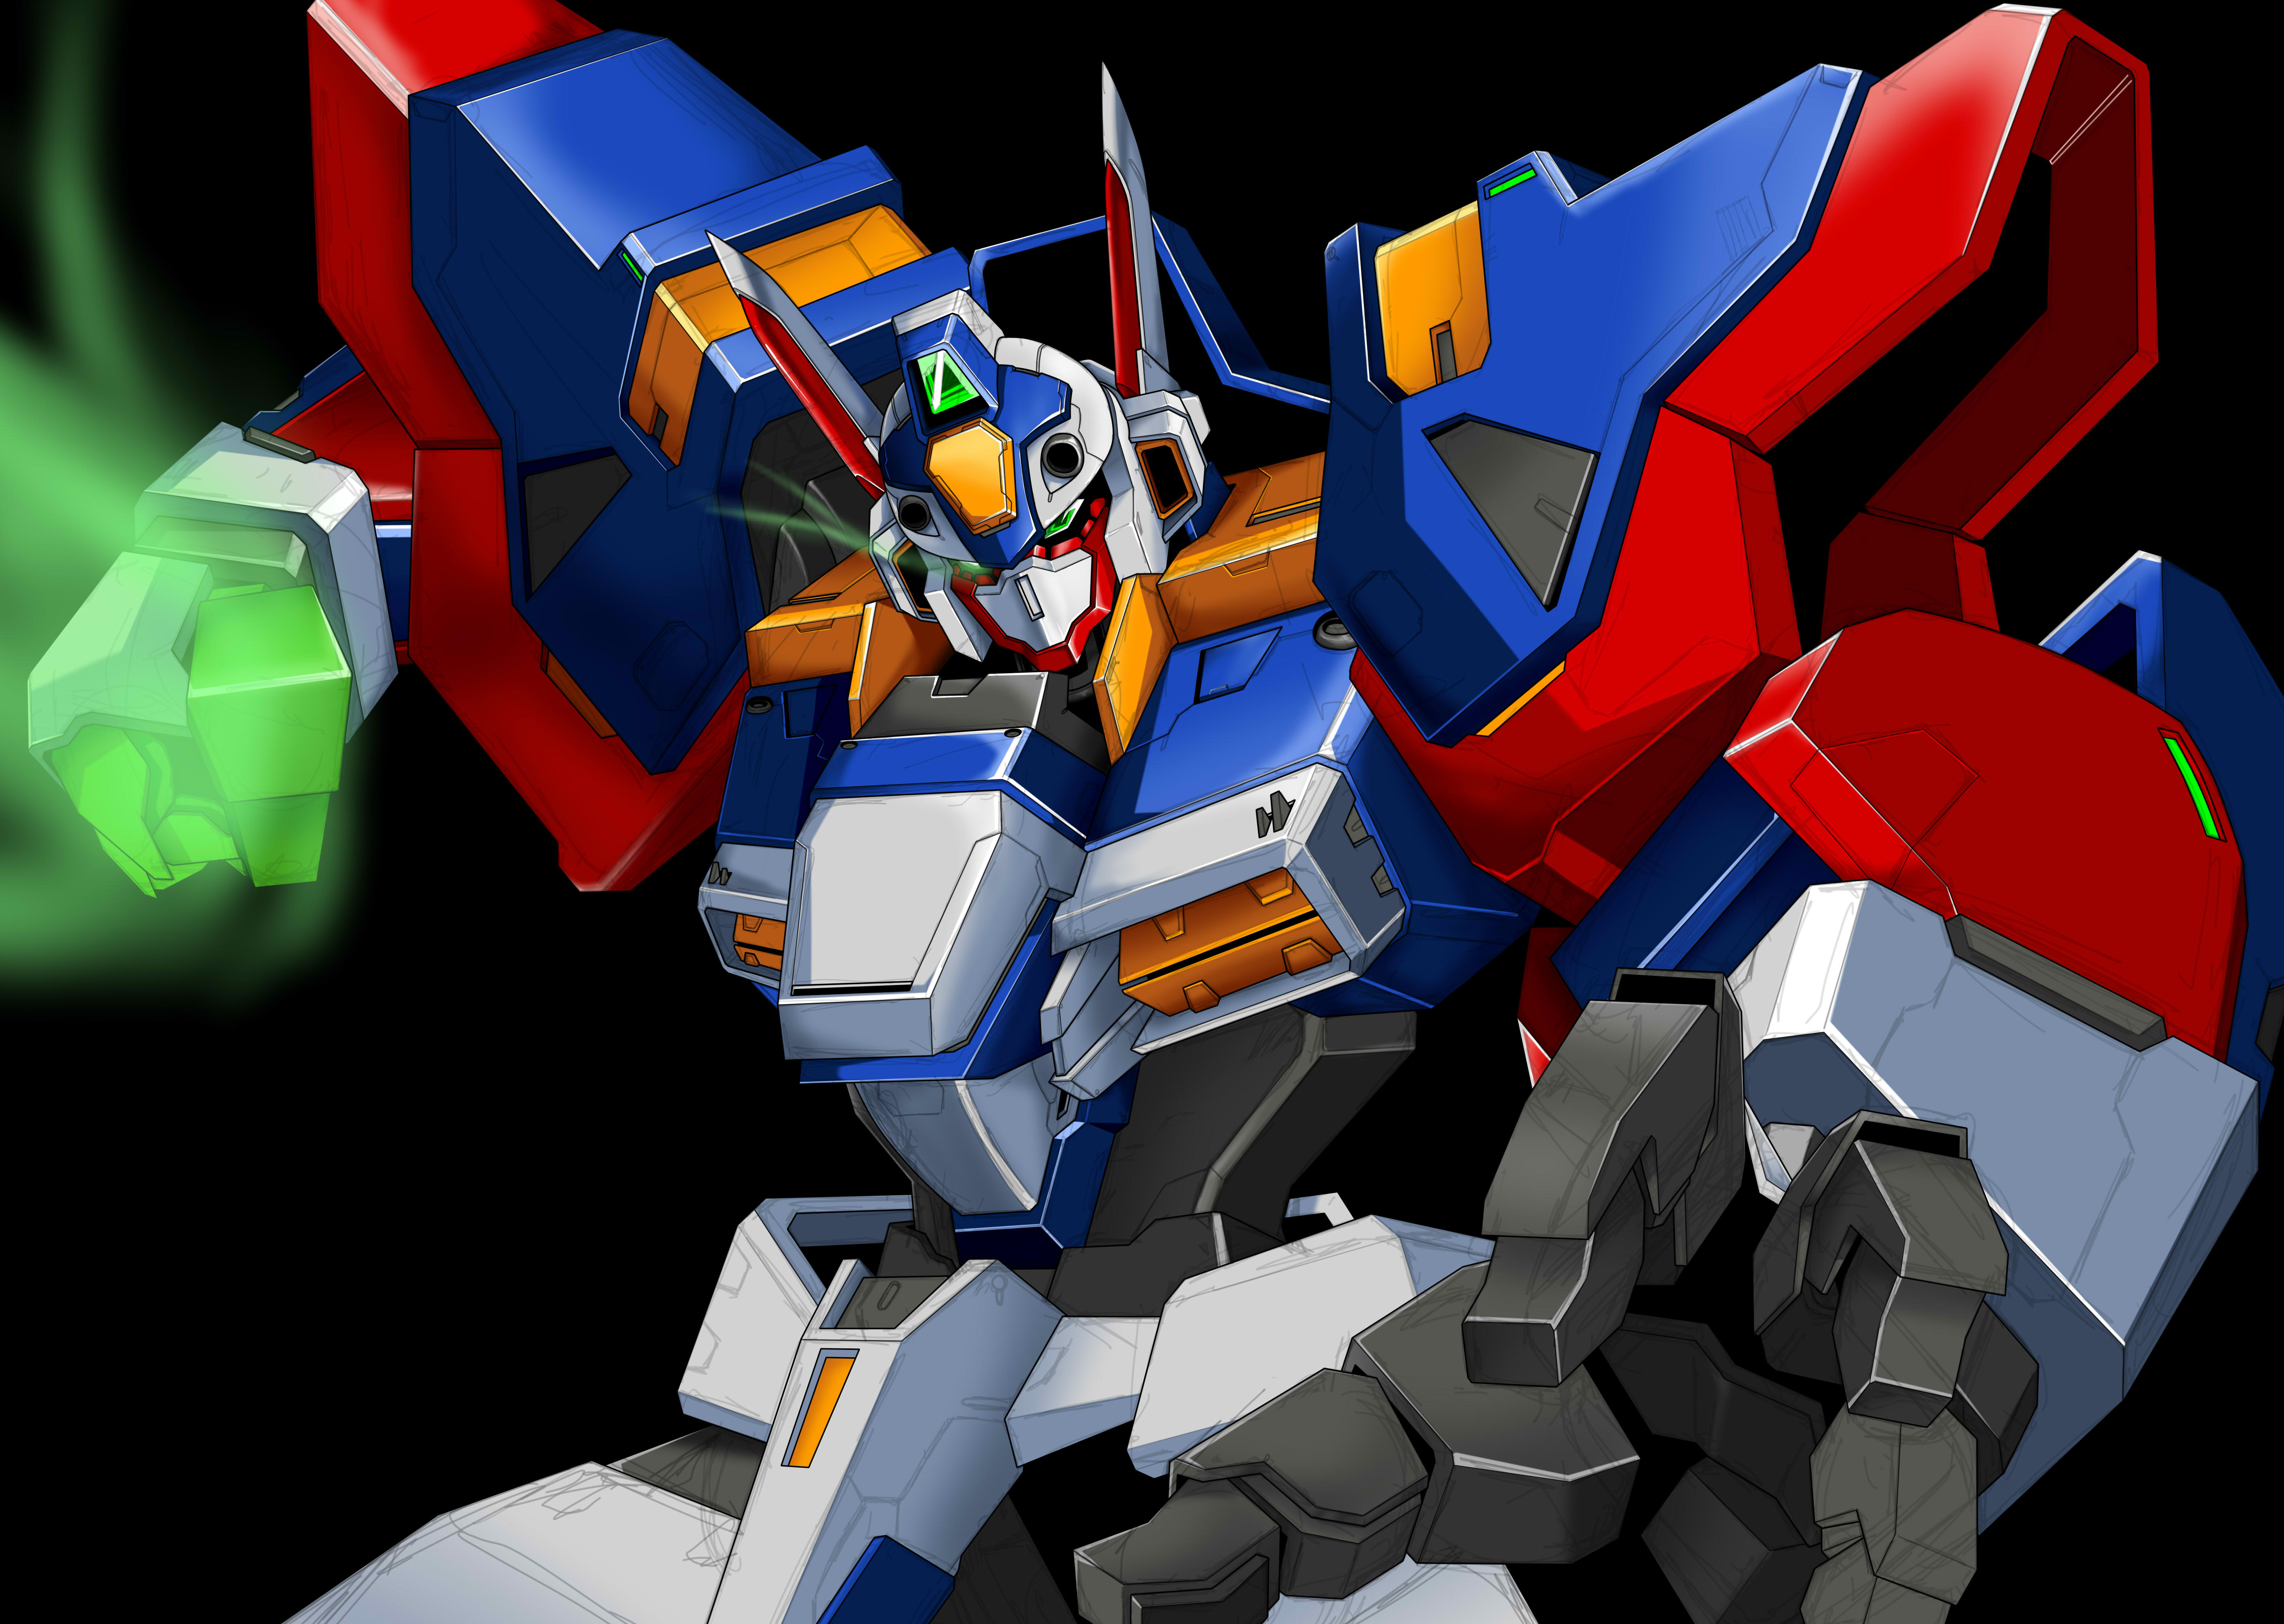 Anime Mechs Super Robot Wars R 1 Artwork Digital Art Fan Art 5625x4000